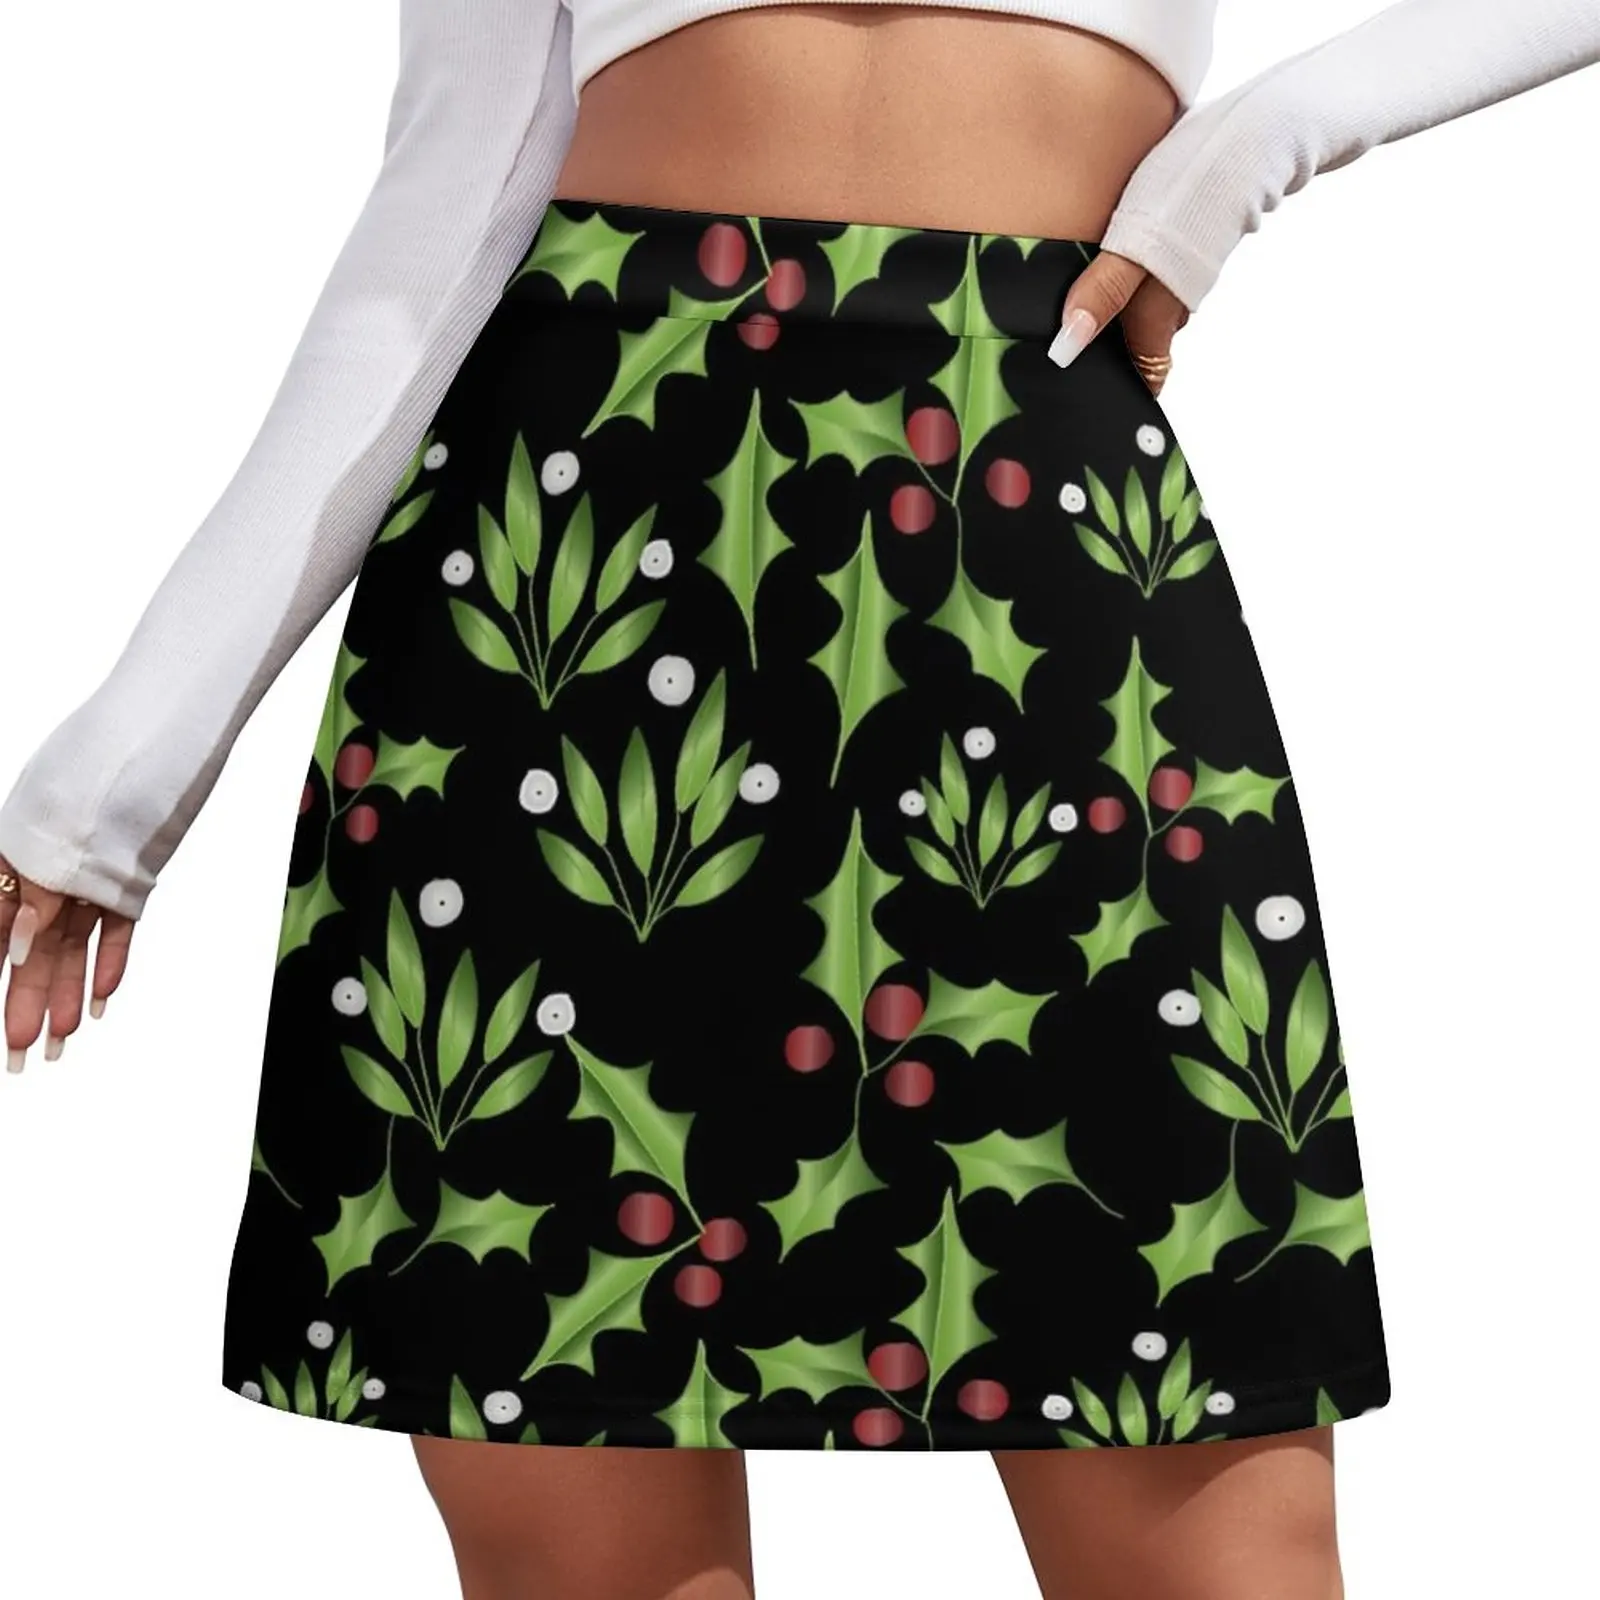 Mistletoe and Ilex Mini Skirt Short skirts Skirt for girls women's stylish skirts